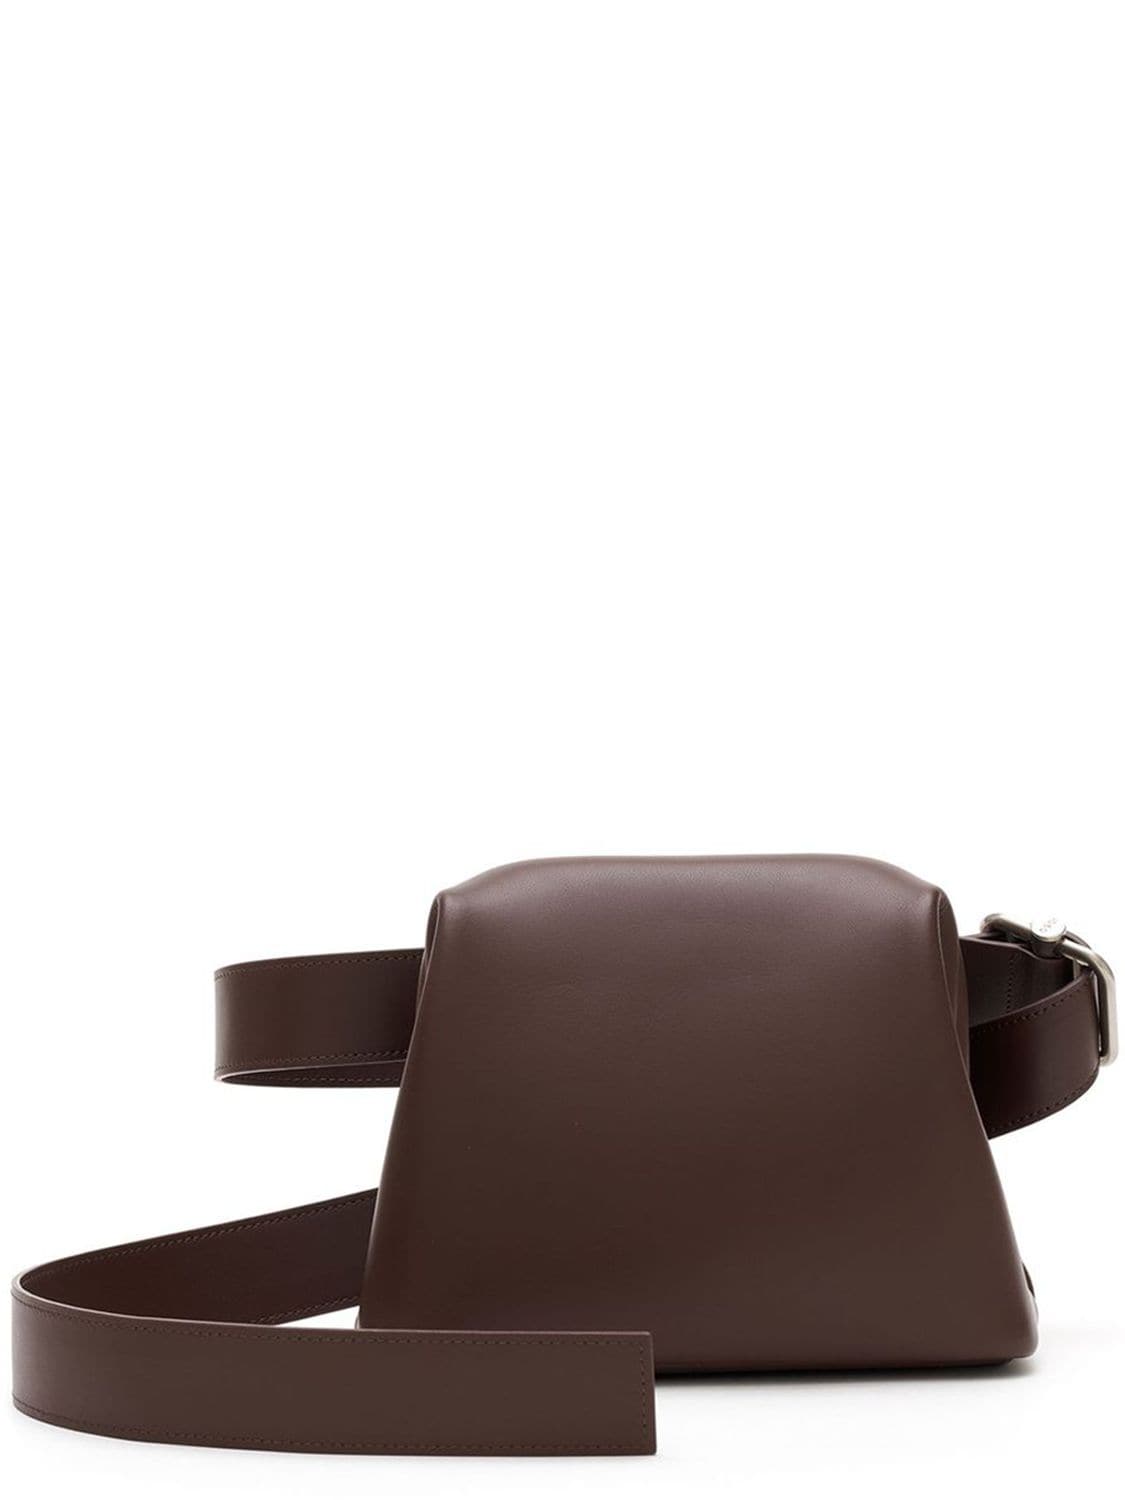 Image of Mini Brot Leather Shoulder Bag